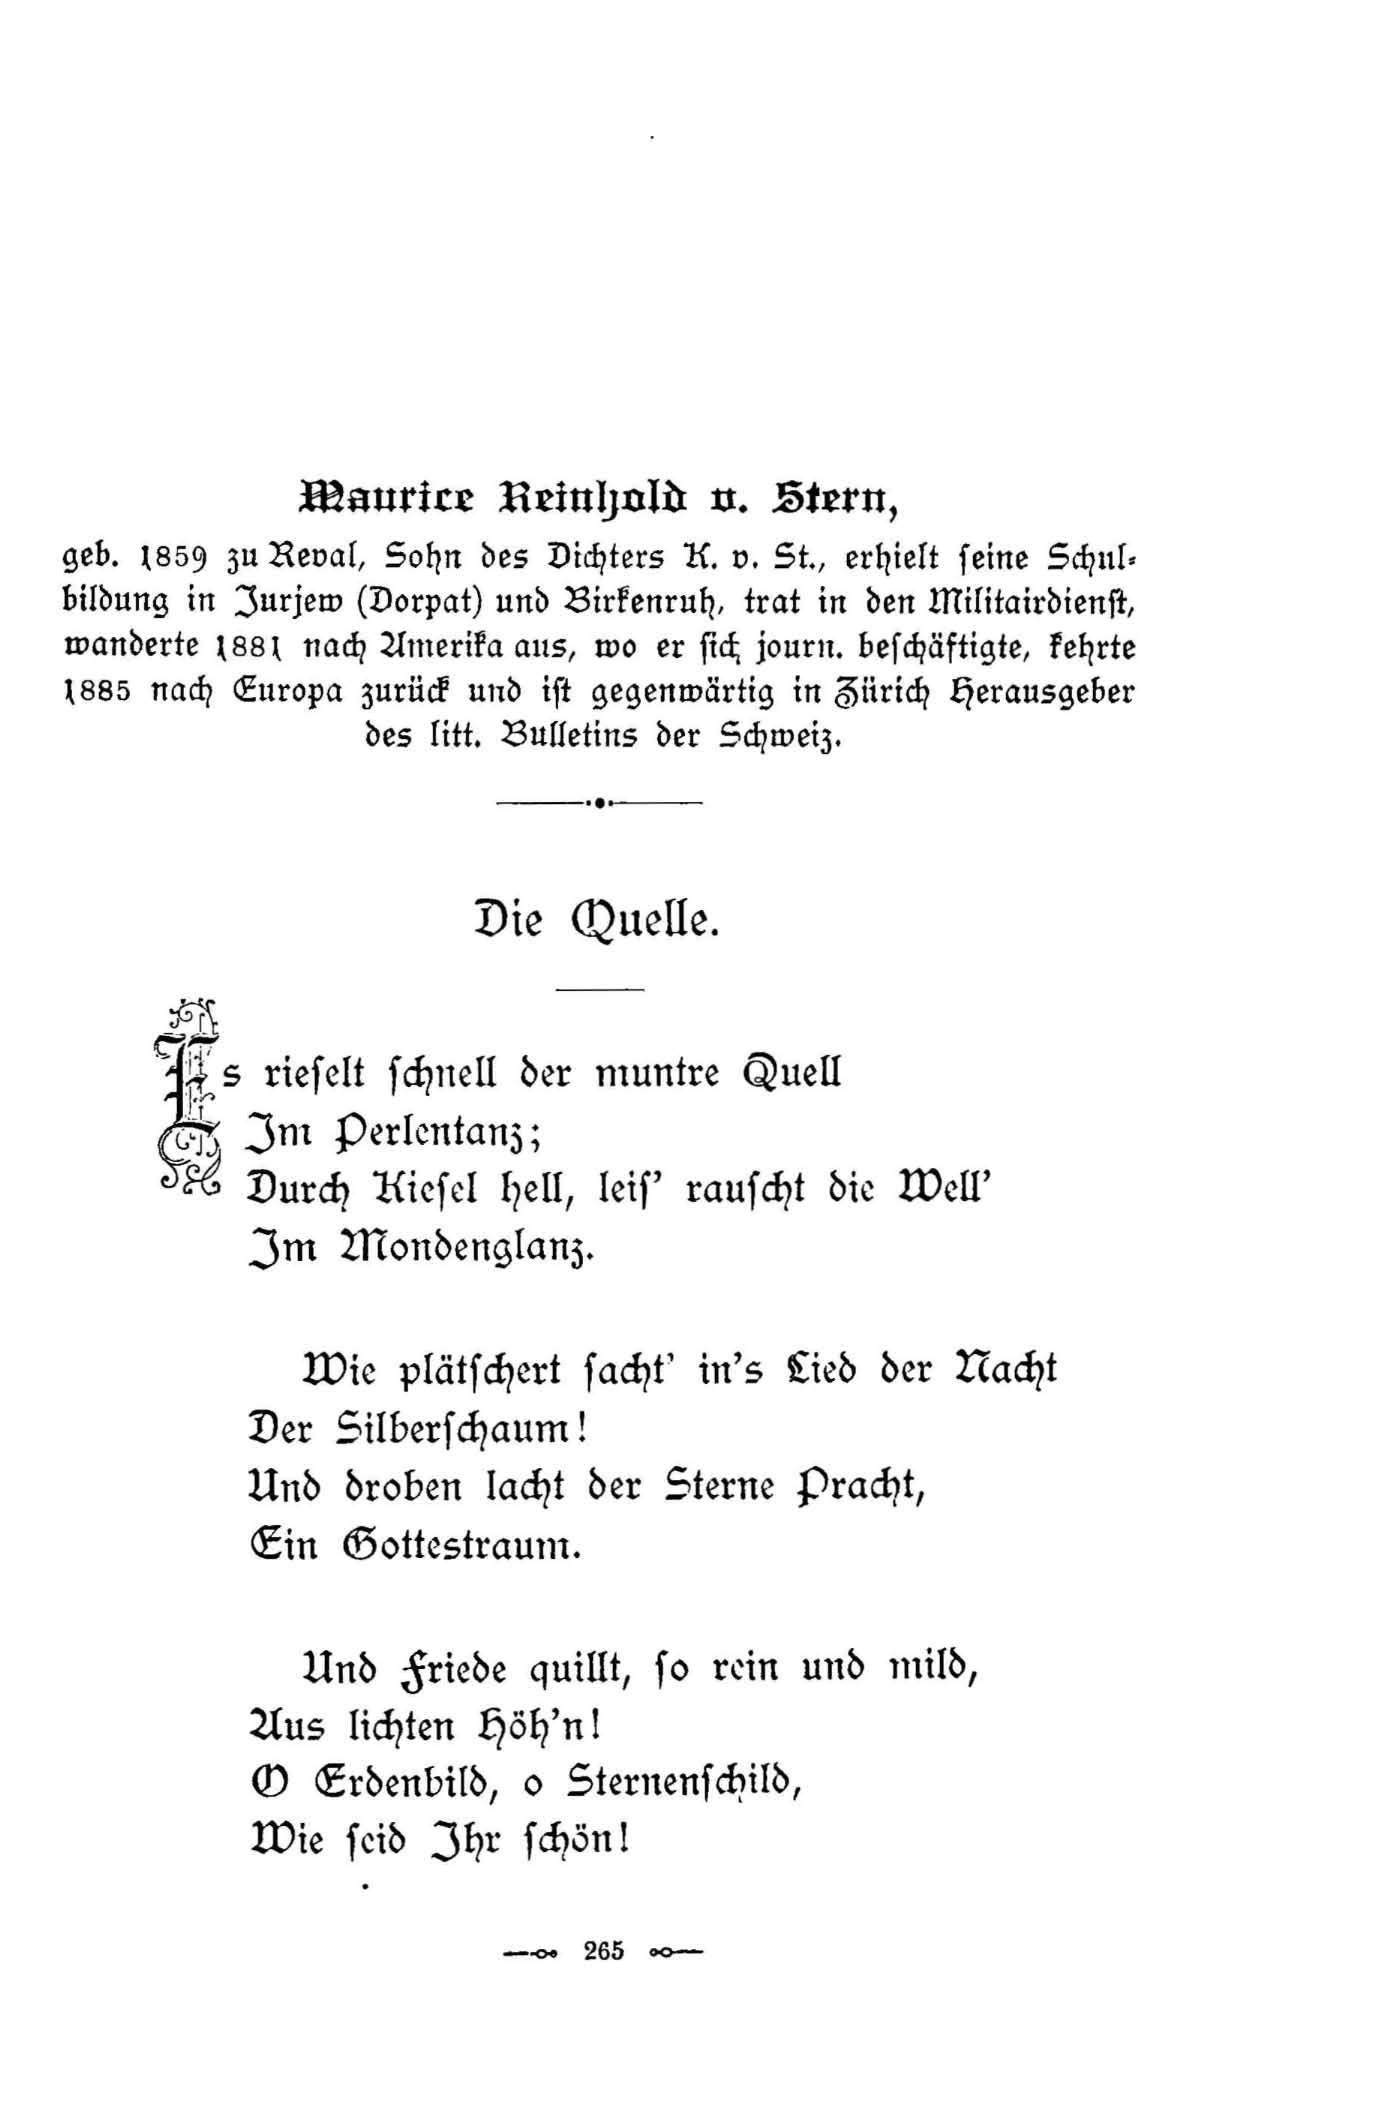 Die Quelle (1896) | 1. (265) Основной текст